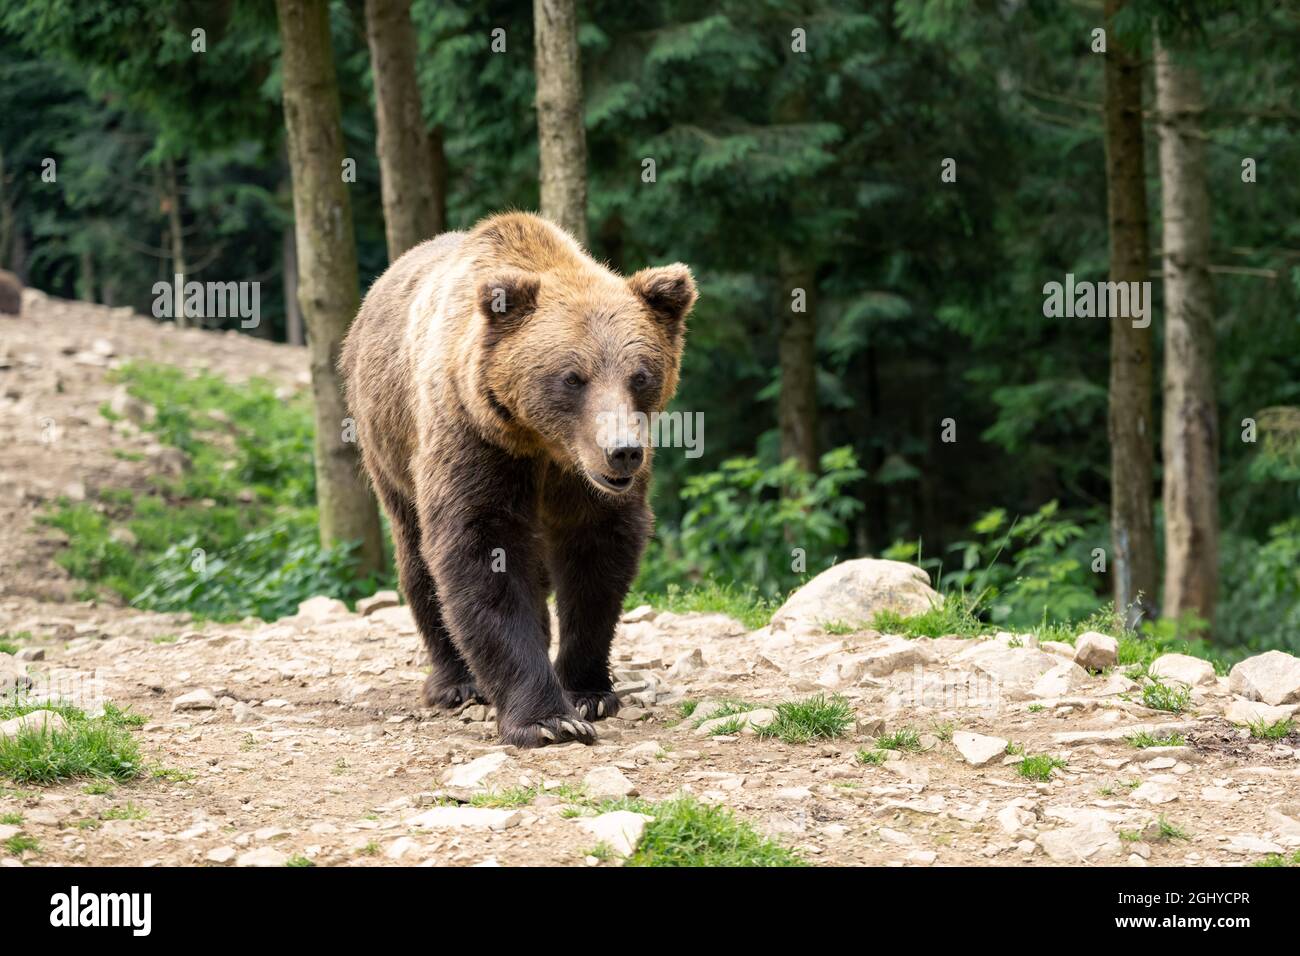 Ritratto di orso bruno selvaggio in verde foresta estiva. Fotografia animale Foto Stock